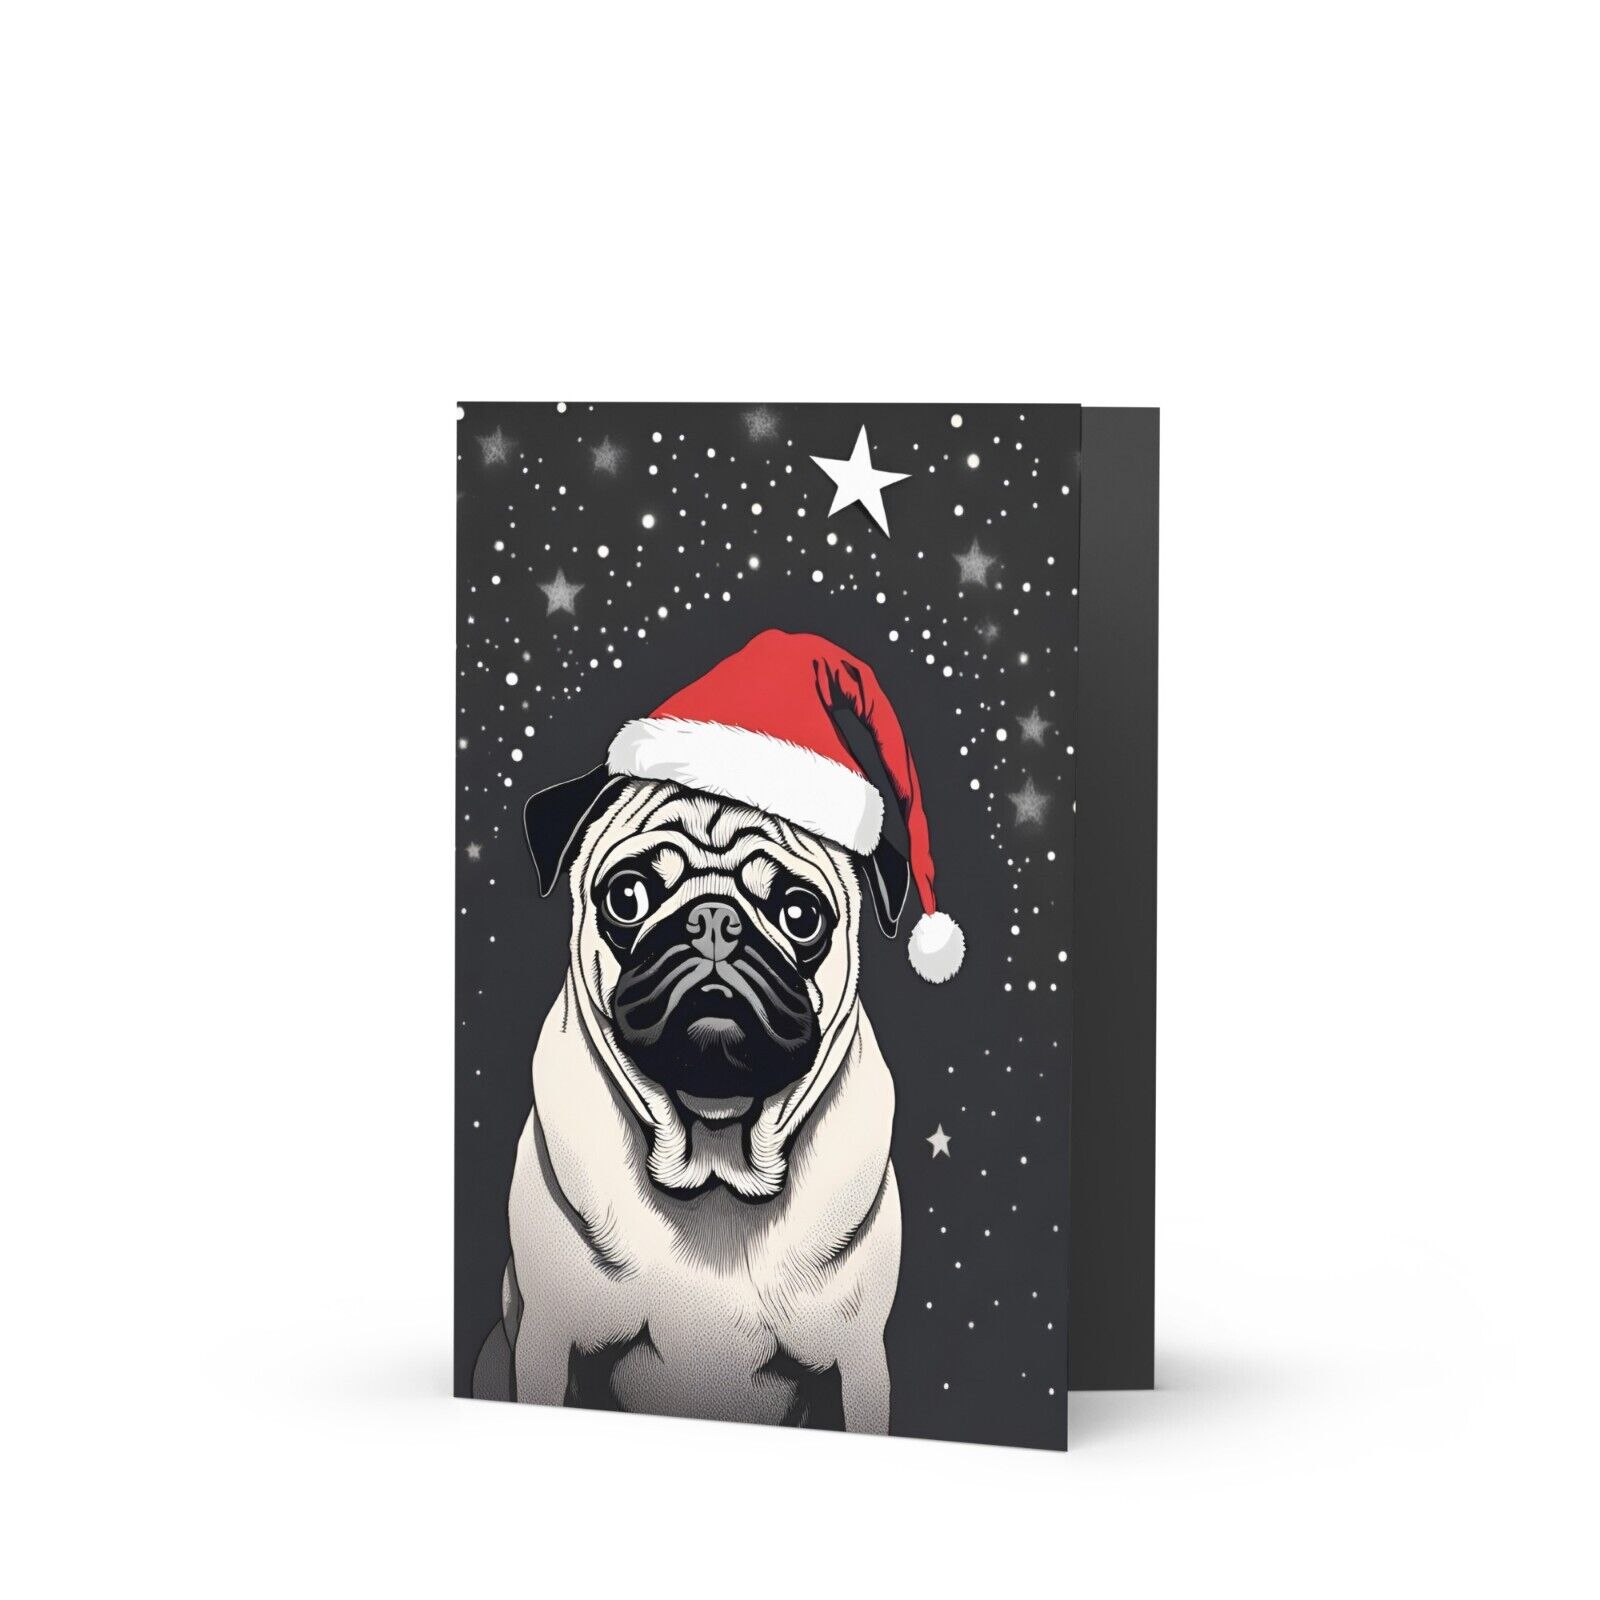 Merry Pugmas | Christmas Greeting Card | Wall Art 5\